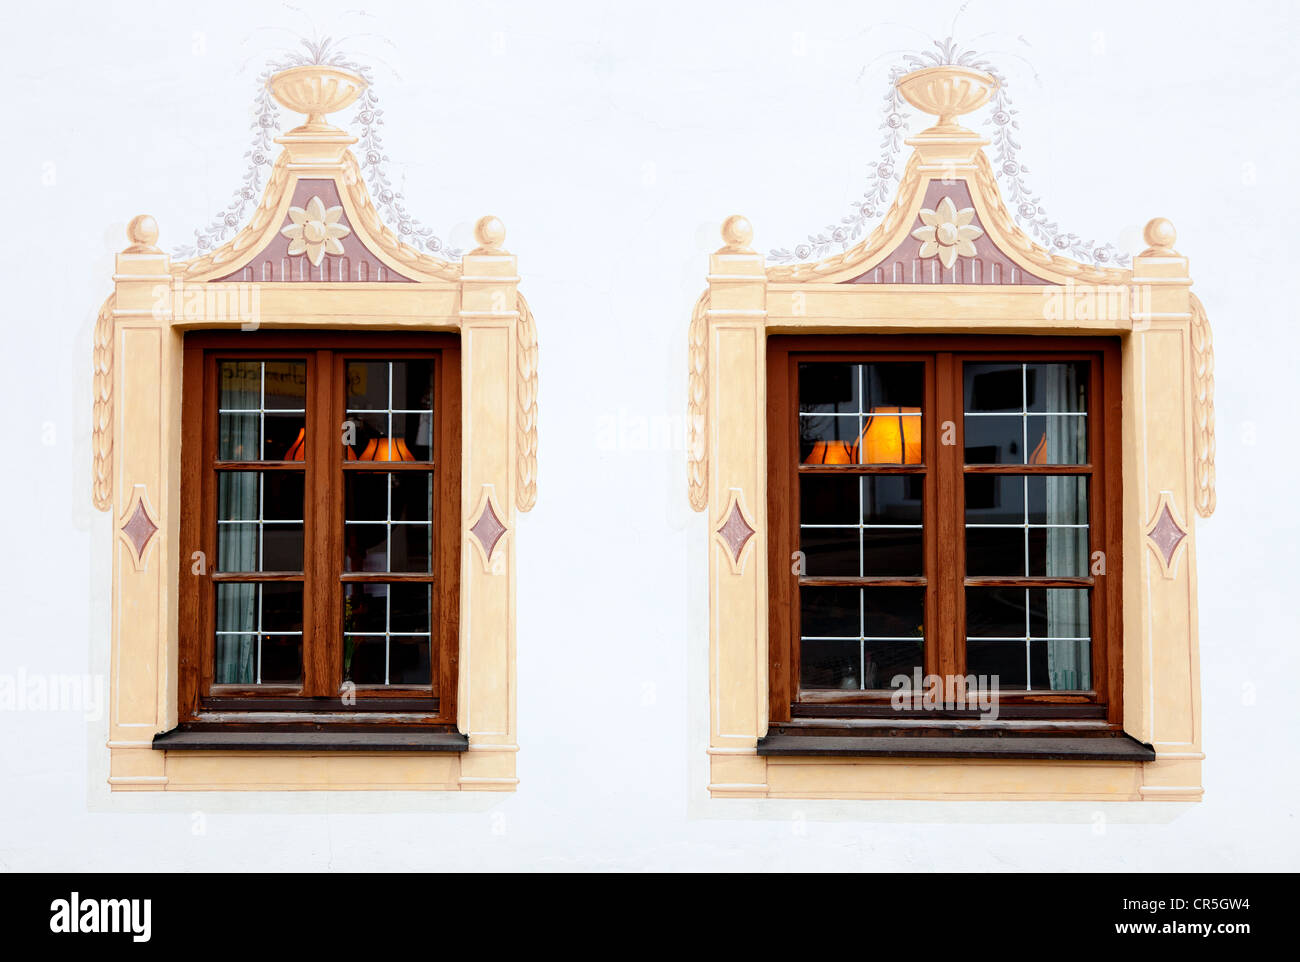 Ein attraktives Gebäude in Trompe l ' œil-Stil gemalt. Aufnahme in Oberammergau, Deutschland Stockfoto